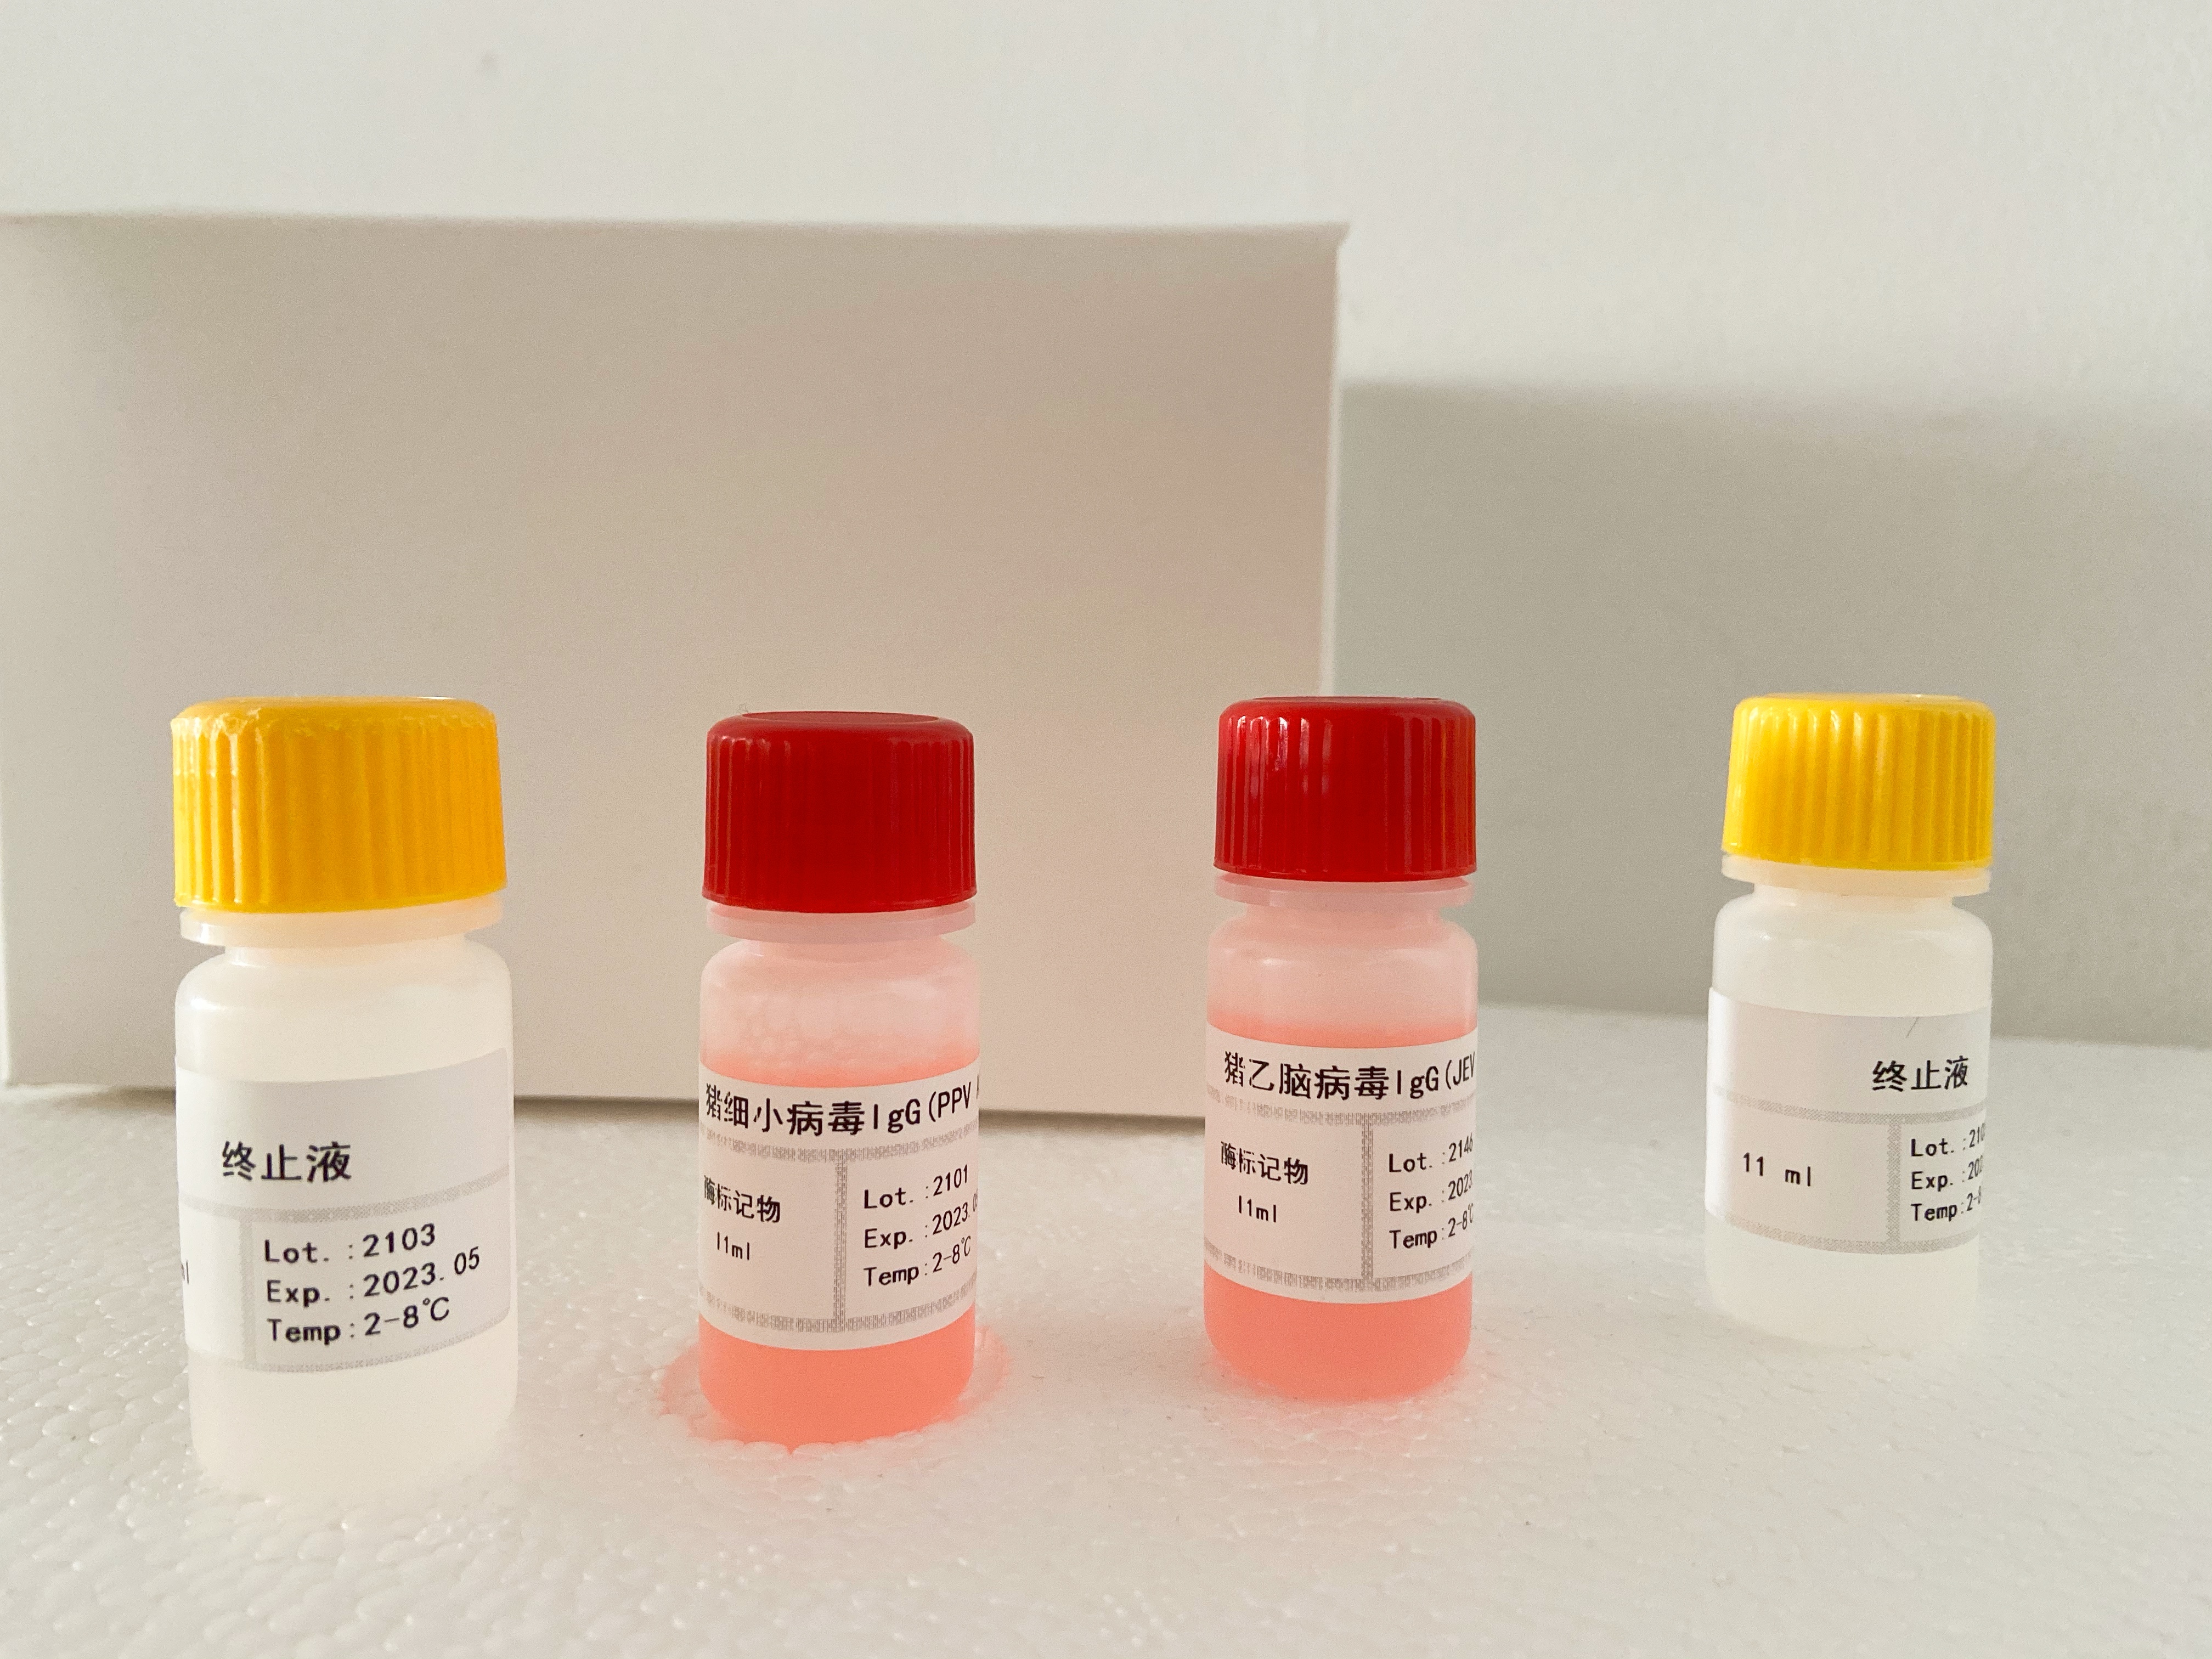 NADH,小鼠检测试剂盒